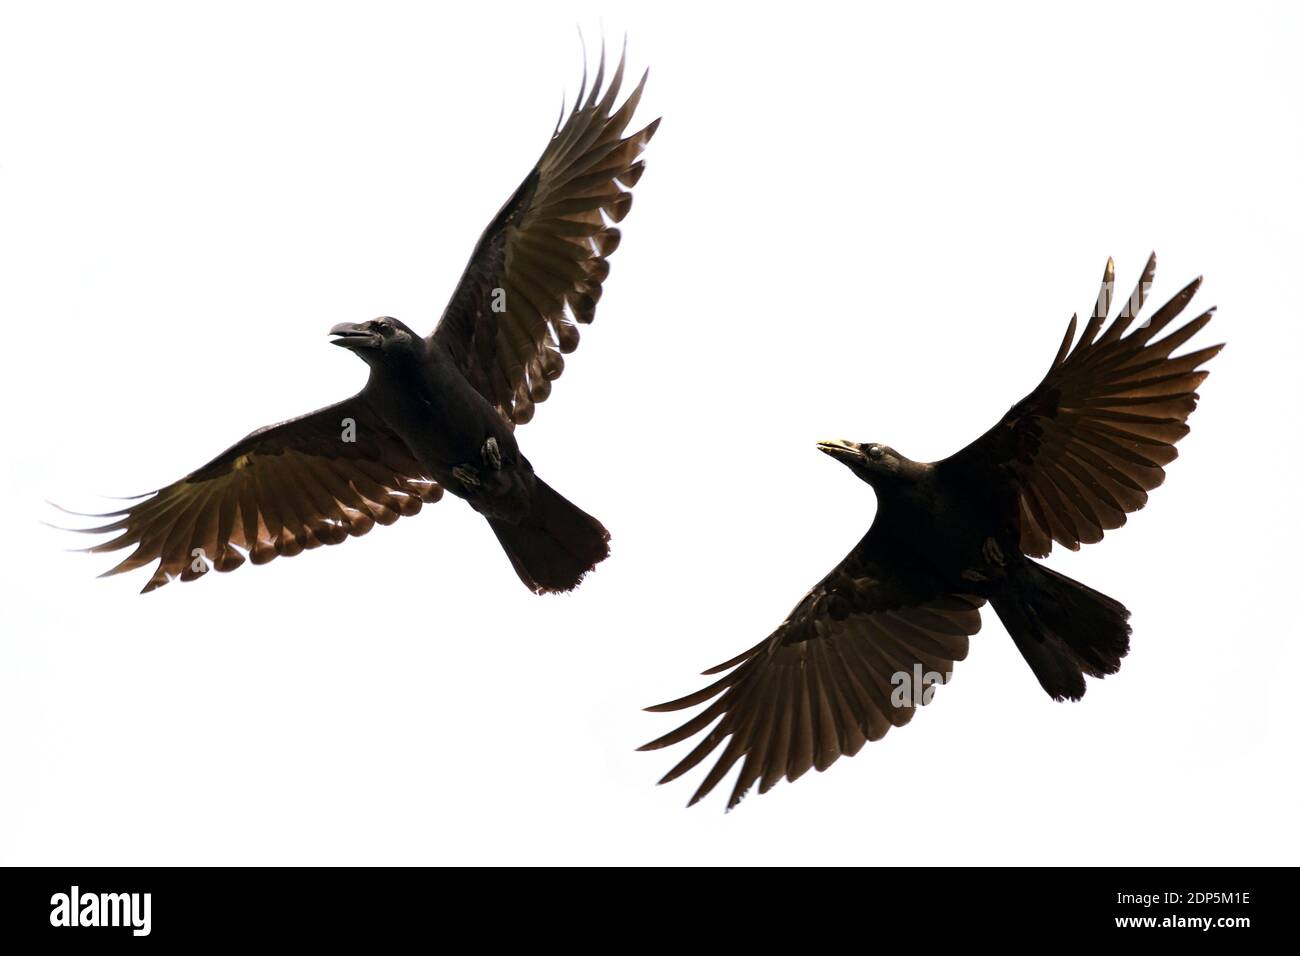 Image of black crow flying on white background. Animal. Black Bird. Stock Photo